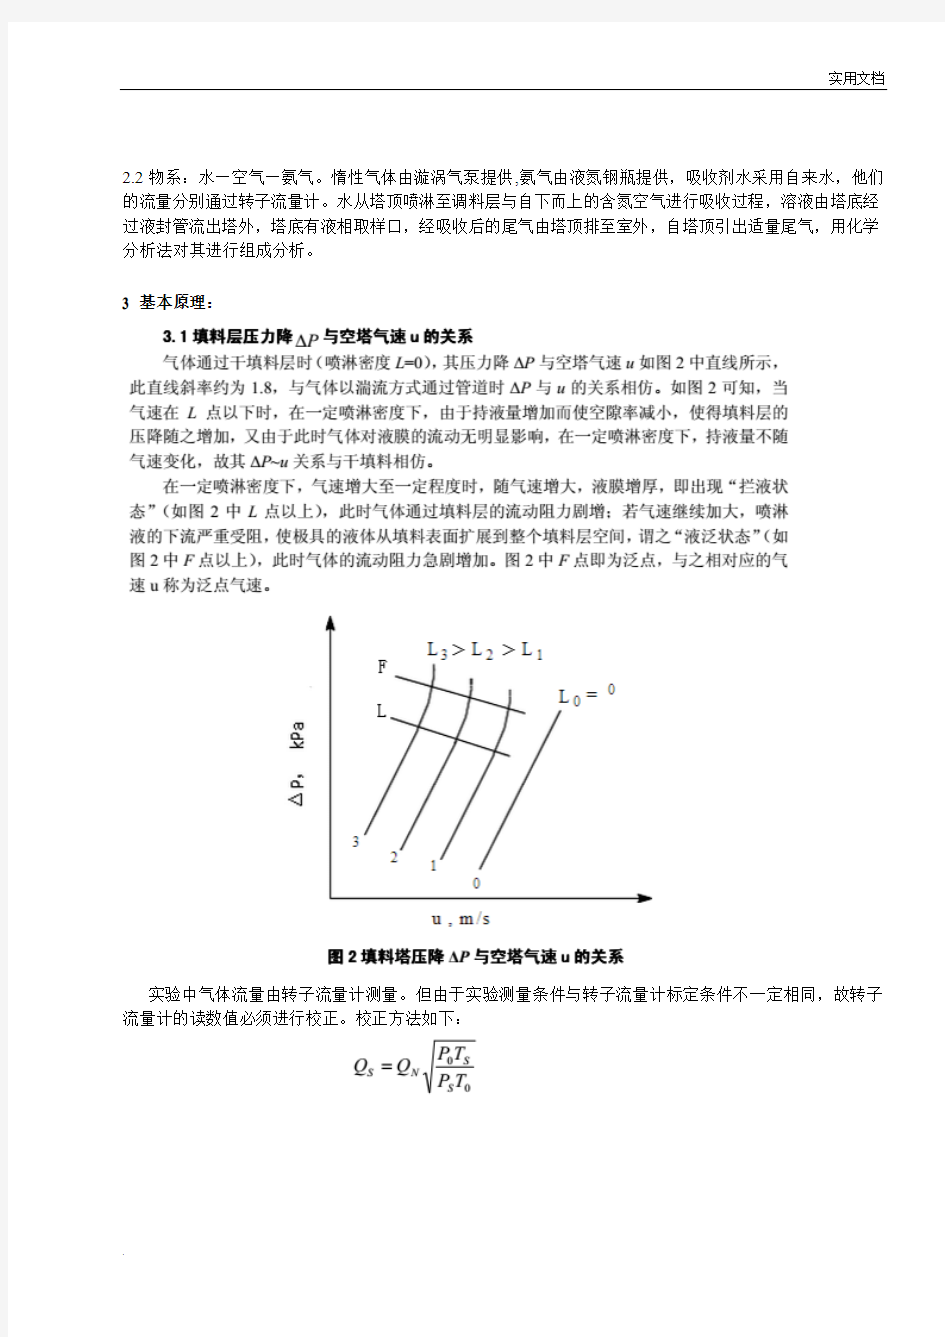 浙江大学化工原理实验-填料塔吸收实验报告